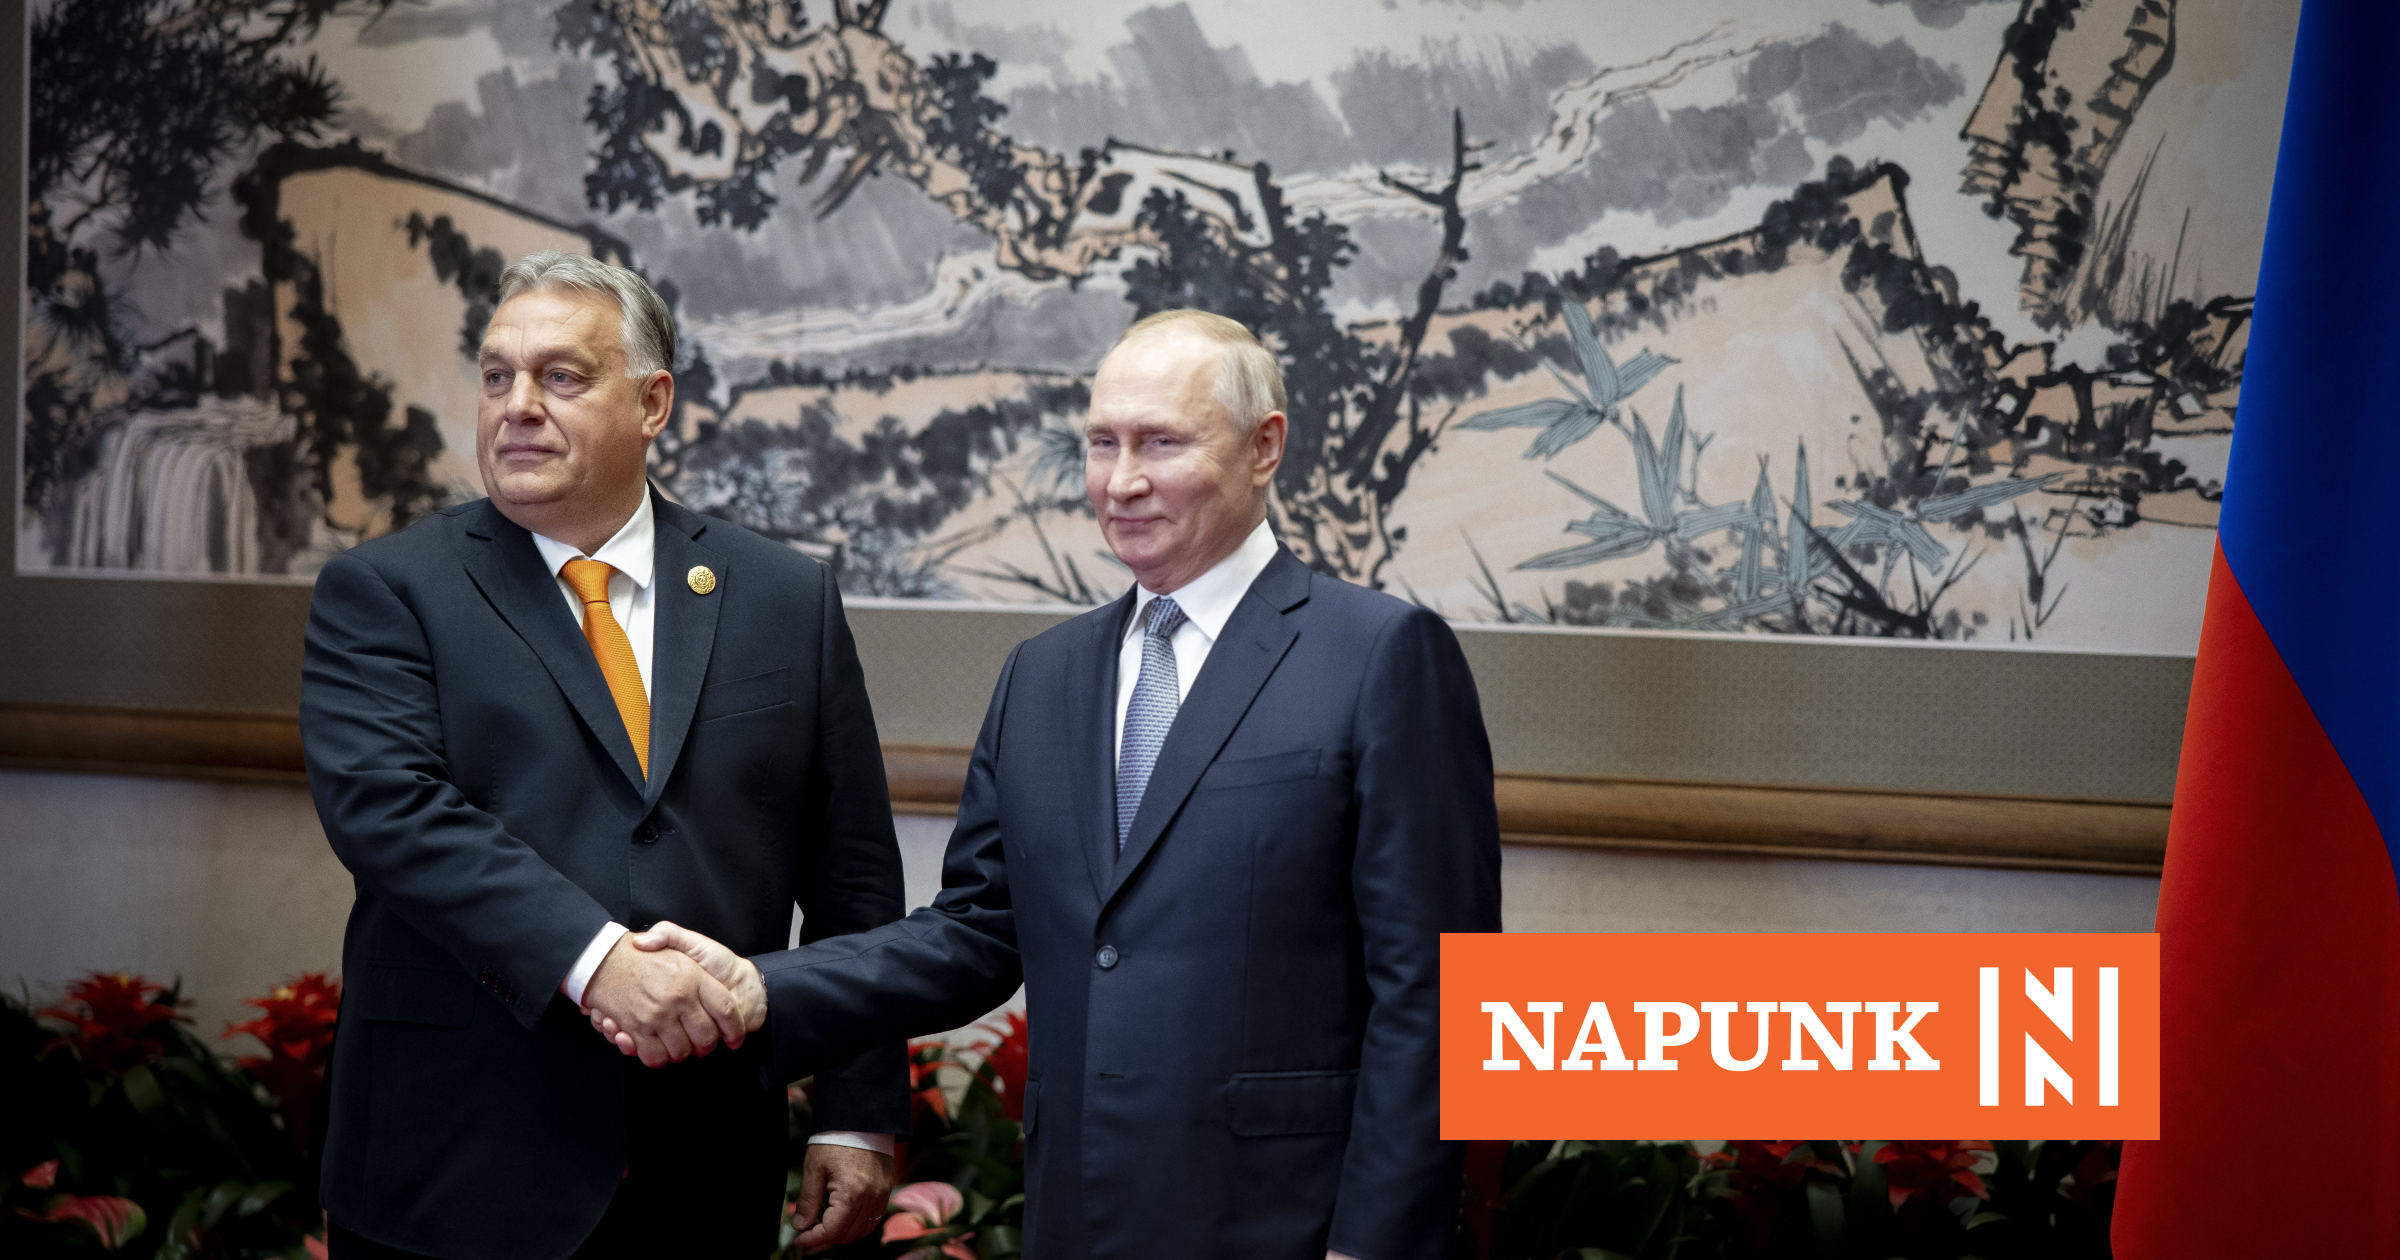 Putyin–Orbán kézfogás: a NATO-nagykövetek budapesti találkozója inkább szimbolikus üzenet, de a háttérben tovább szűkül...